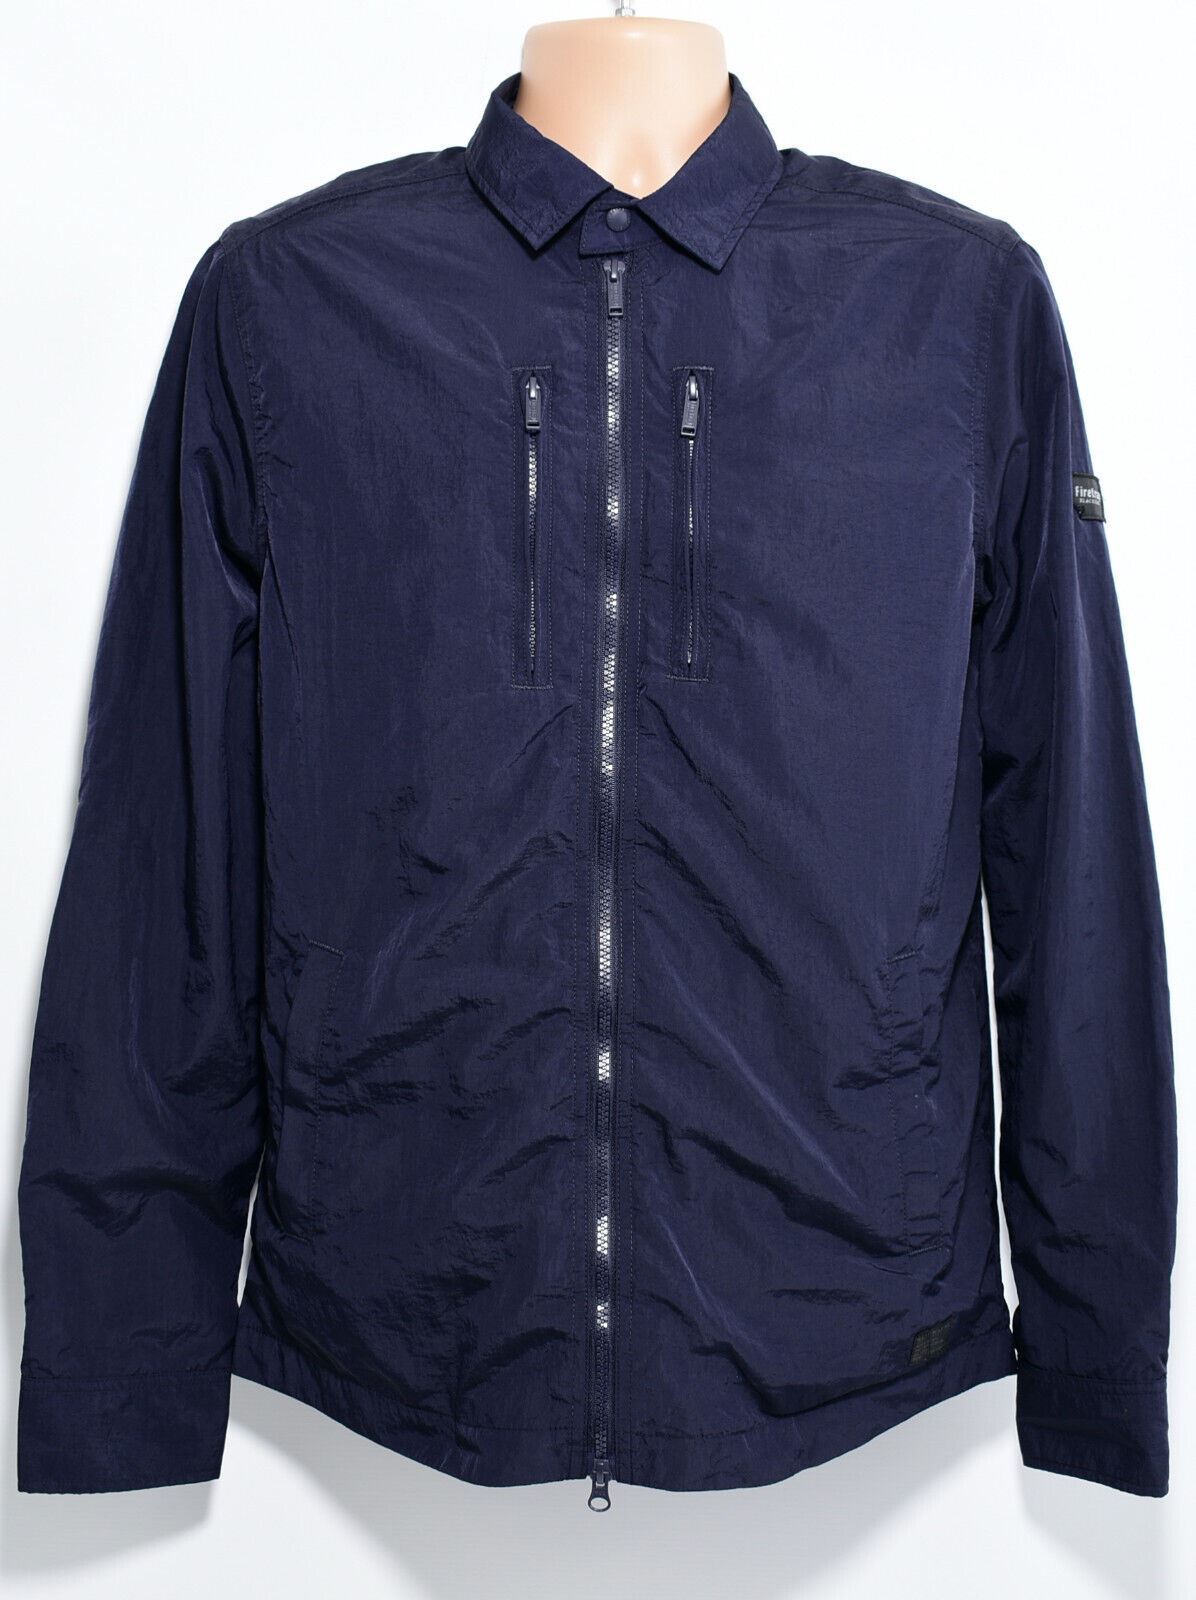 FIRETRAP BLACKSEAL Men's Shacket, Zip Shirt Jacket, Navy Blue, size XL